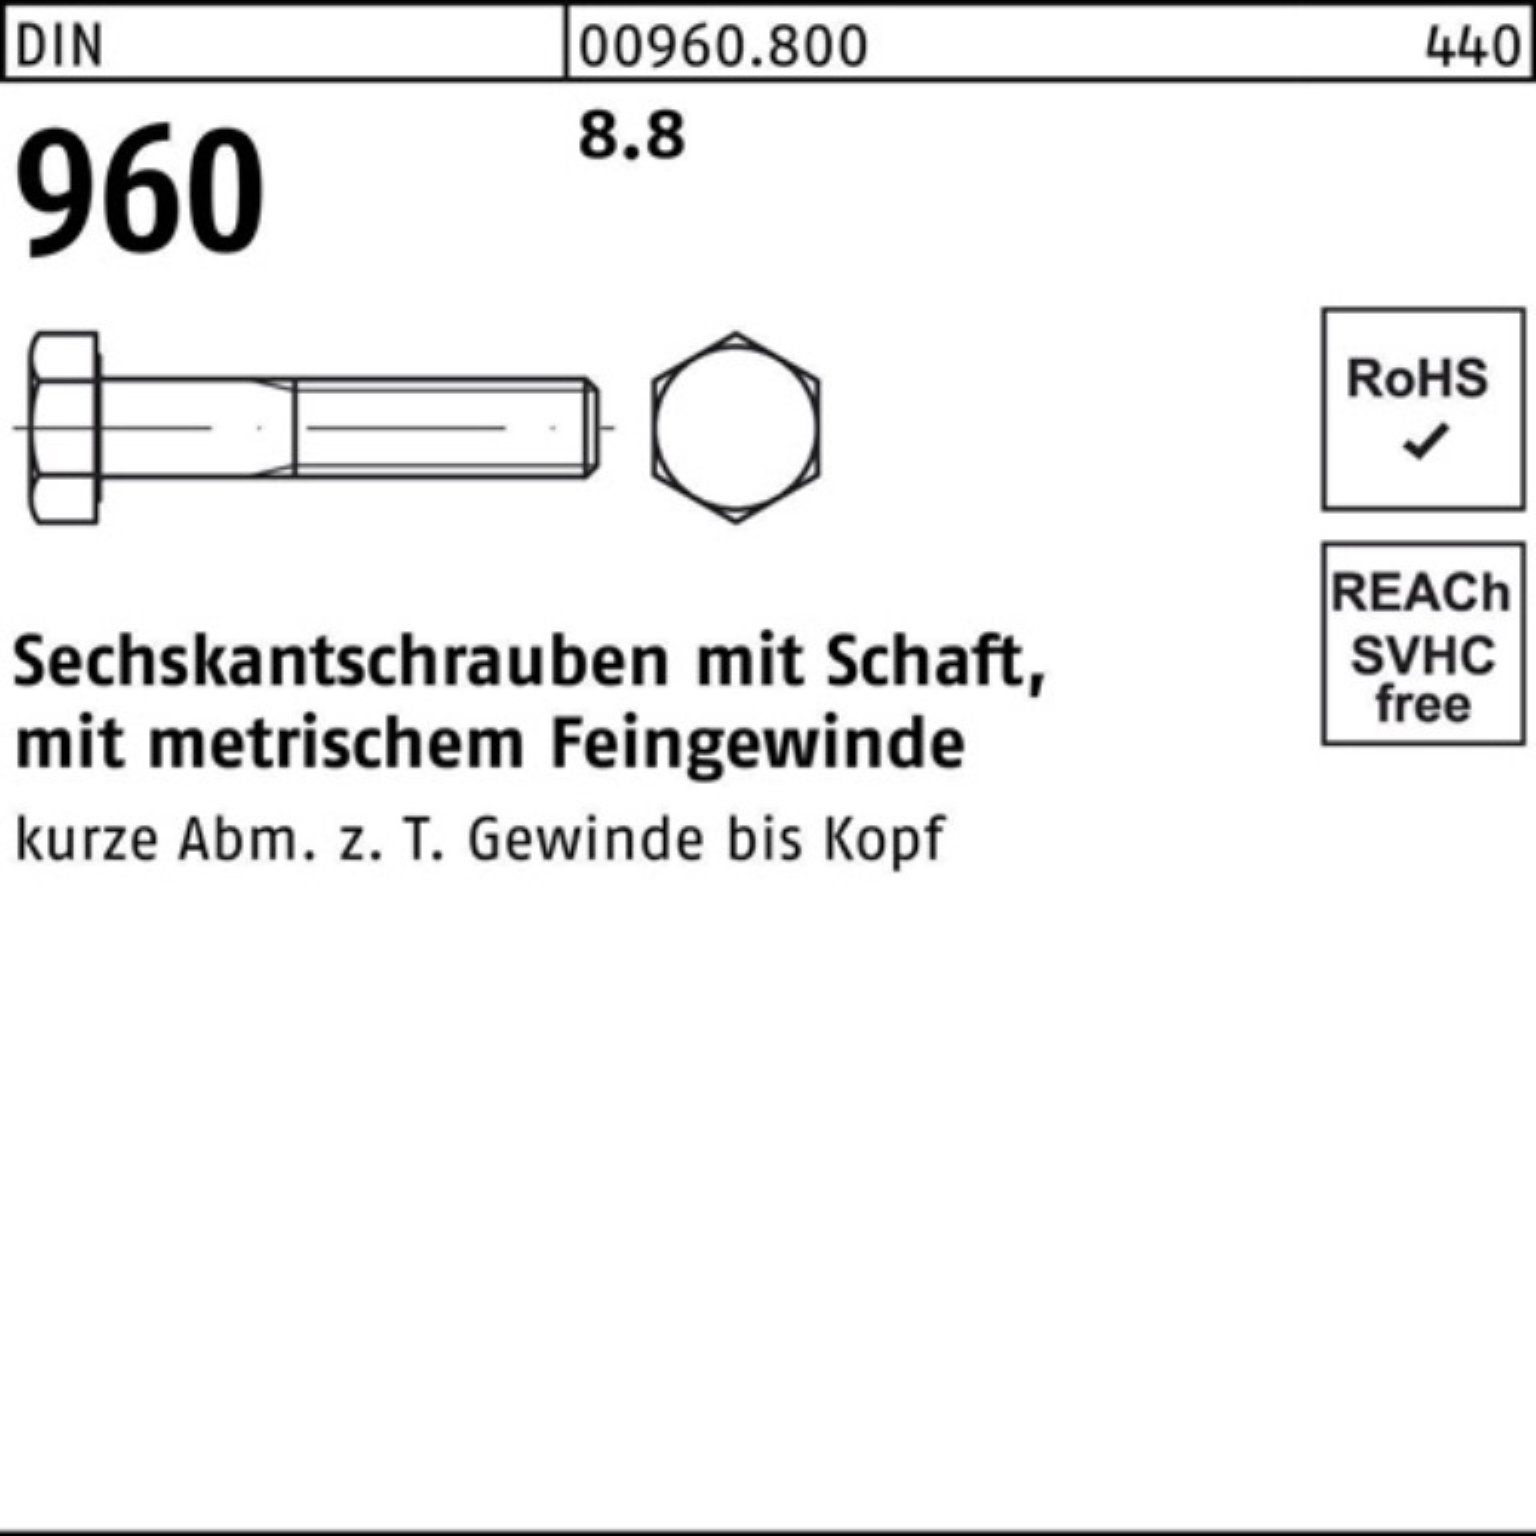 Schaft 100er DIN Reyher Sechskantschraube Stück Pack DI 10 Sechskantschraube M24x2x140 960 8.8